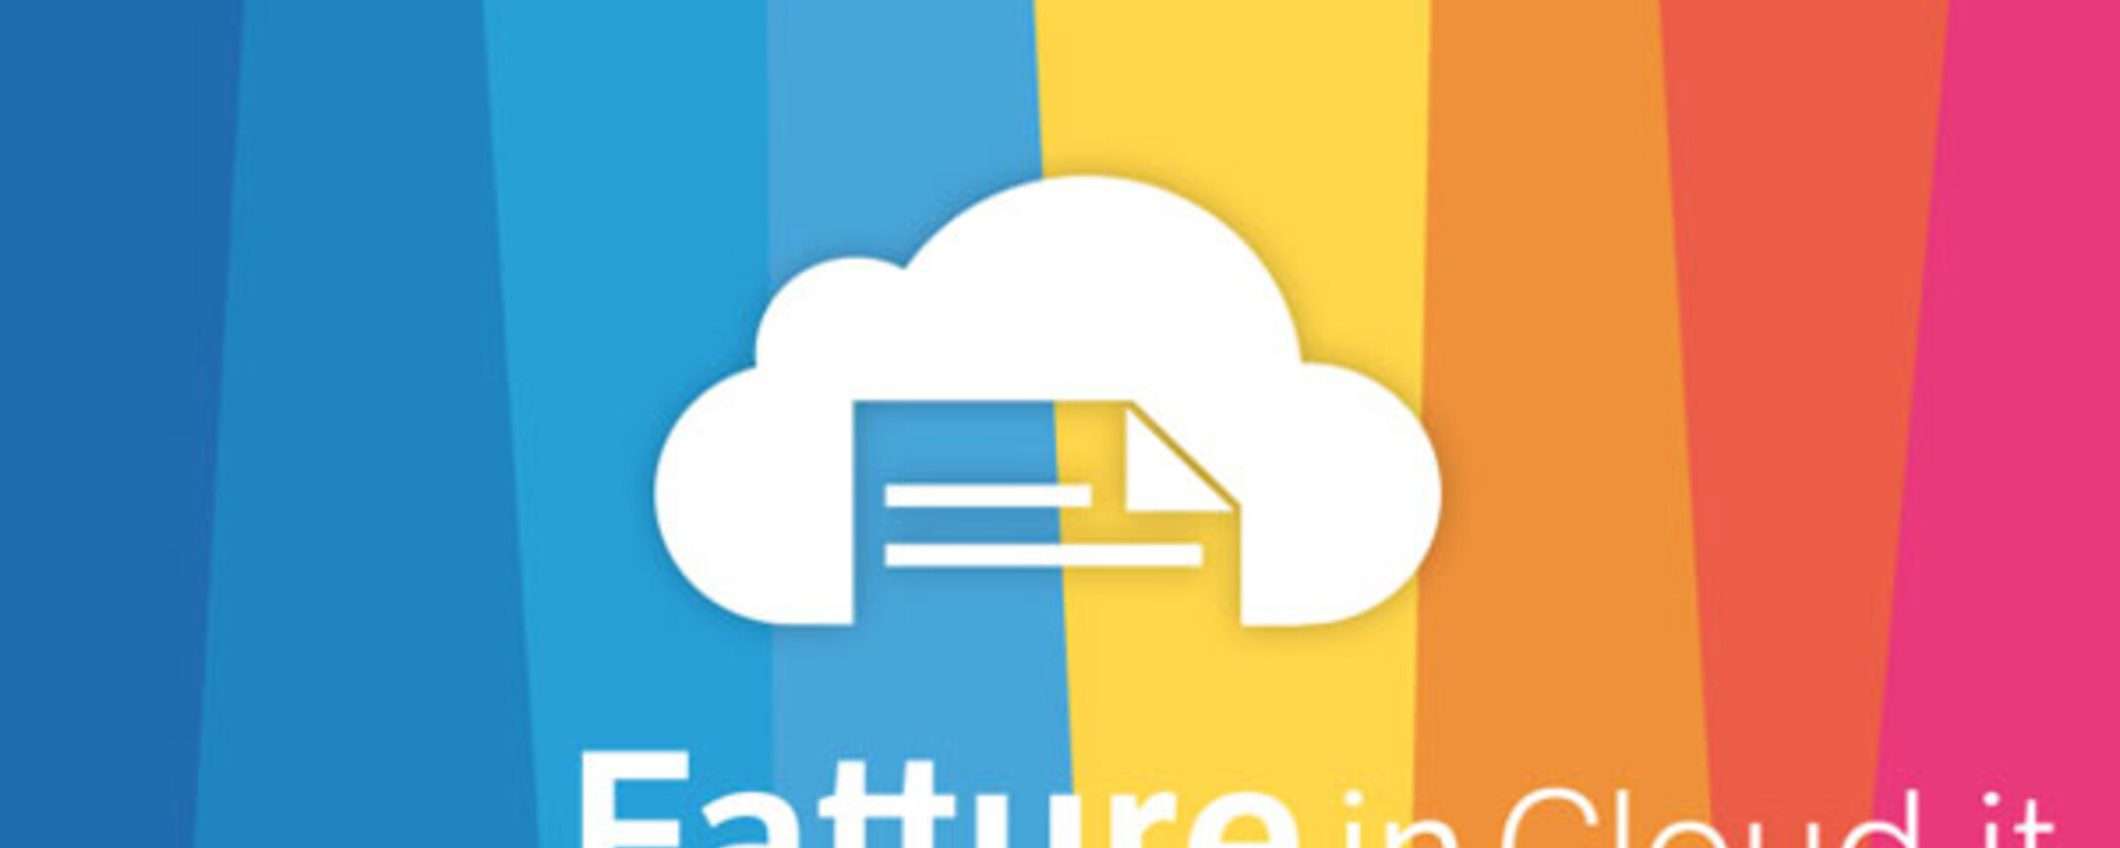 Fatture in Cloud, la soluzione semplice e gratuita per la tua fatturazione online